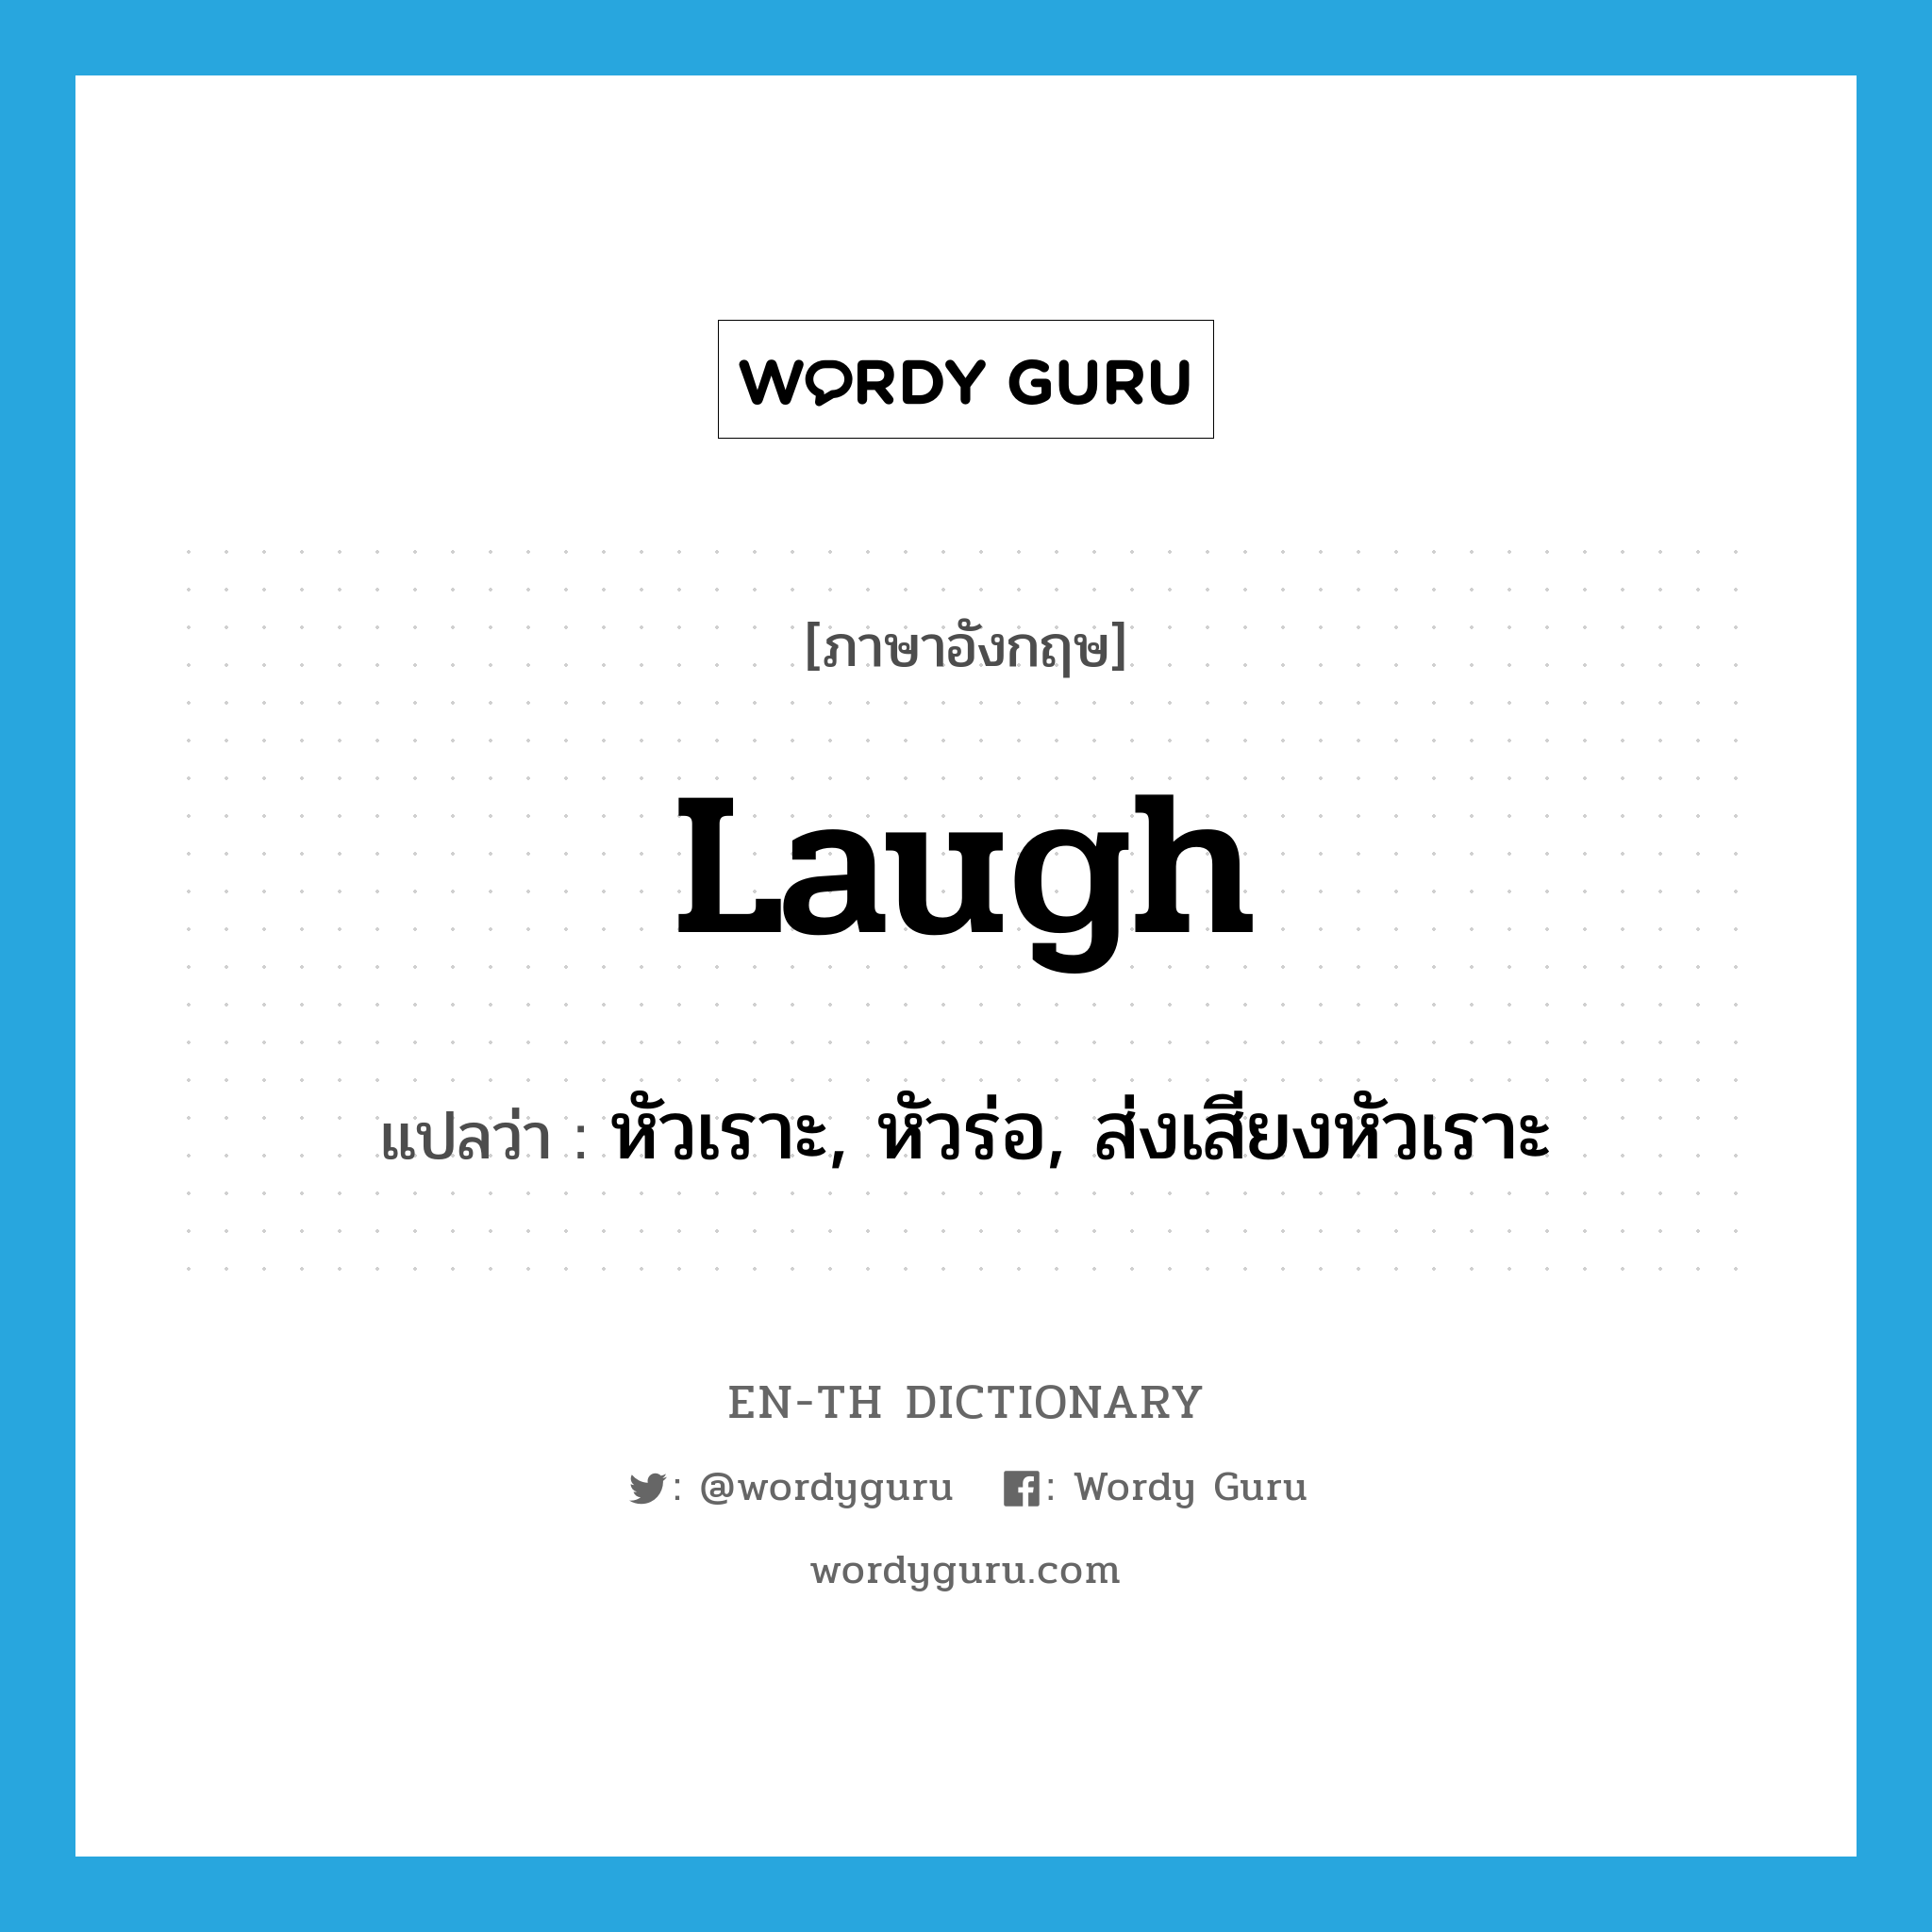 หัวเราะ, หัวร่อ, ส่งเสียงหัวเราะ ภาษาอังกฤษ?, คำศัพท์ภาษาอังกฤษ หัวเราะ, หัวร่อ, ส่งเสียงหัวเราะ แปลว่า laugh ประเภท VI หมวด VI